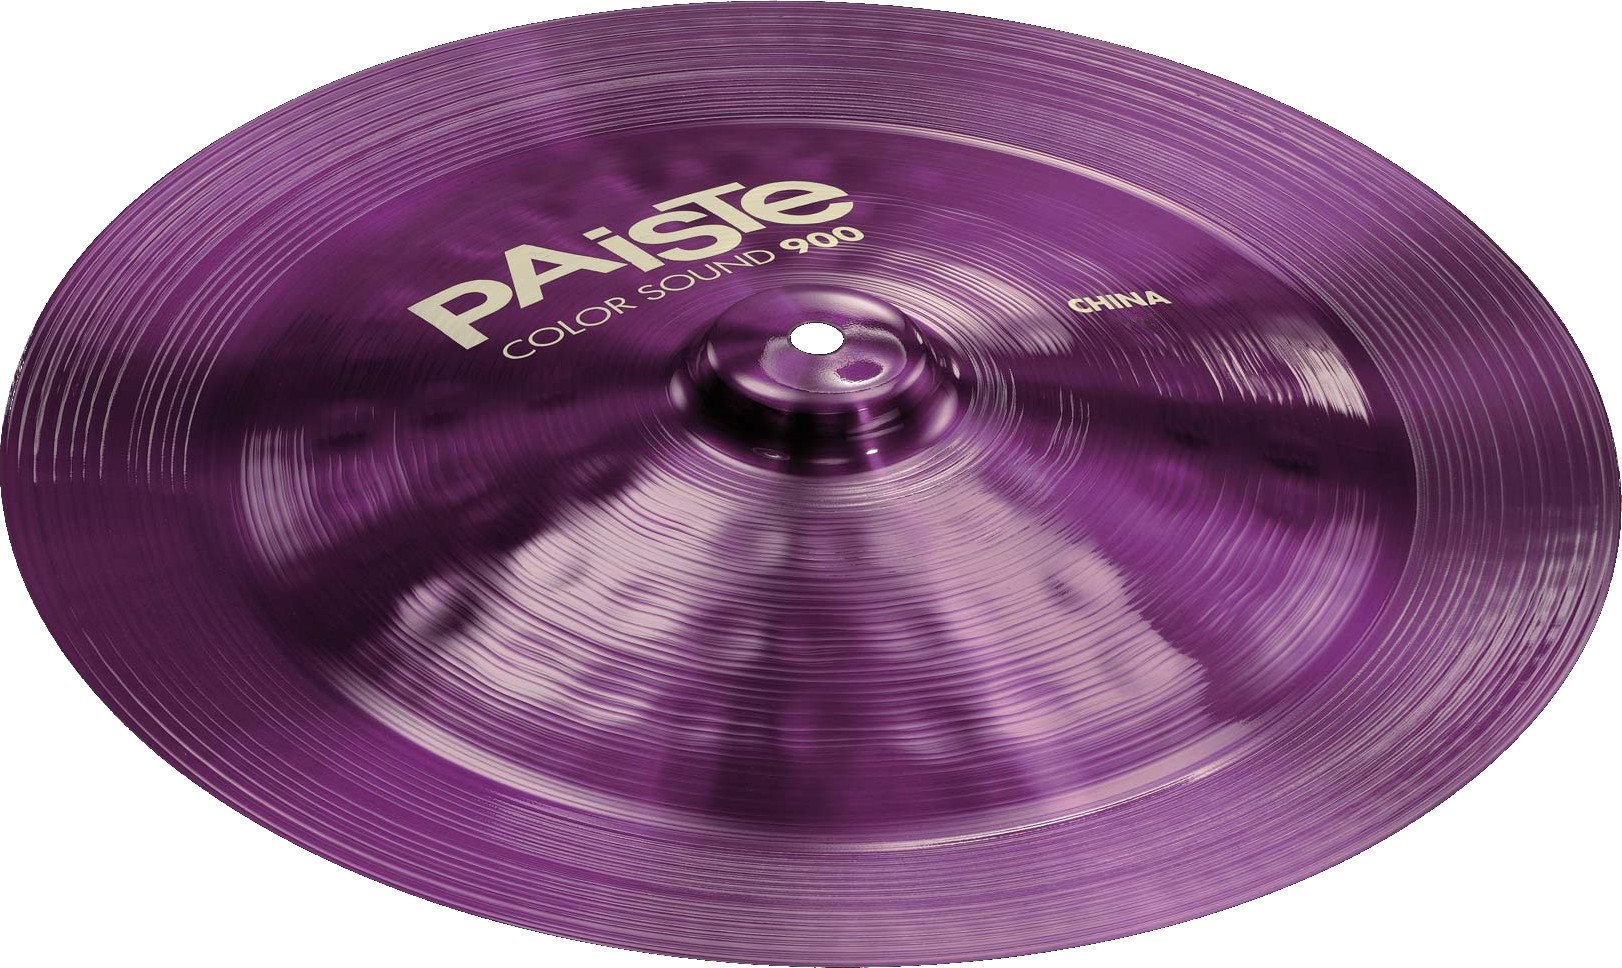 China Cymbal Paiste Color Sound 900 China Cymbal 16" Violett